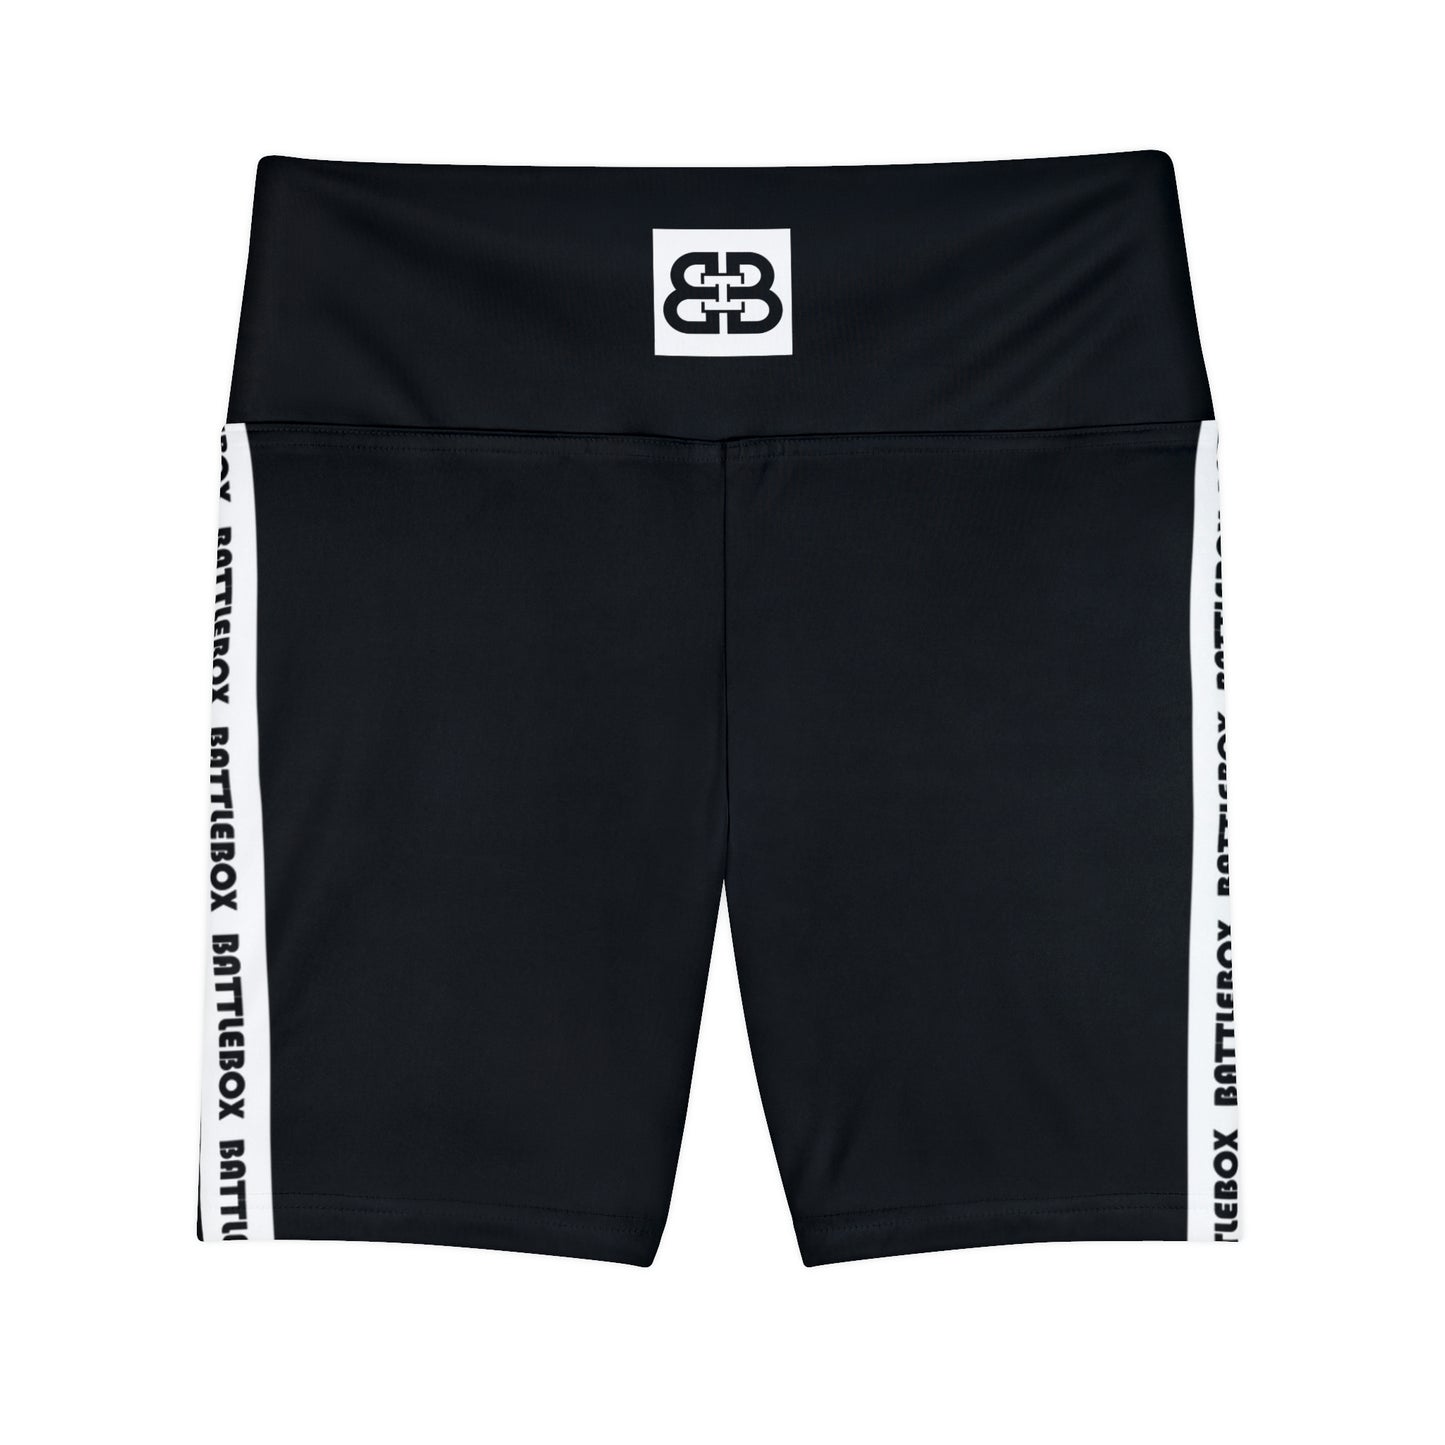 Battle Box White/Black Women's Workout Shorts-T1